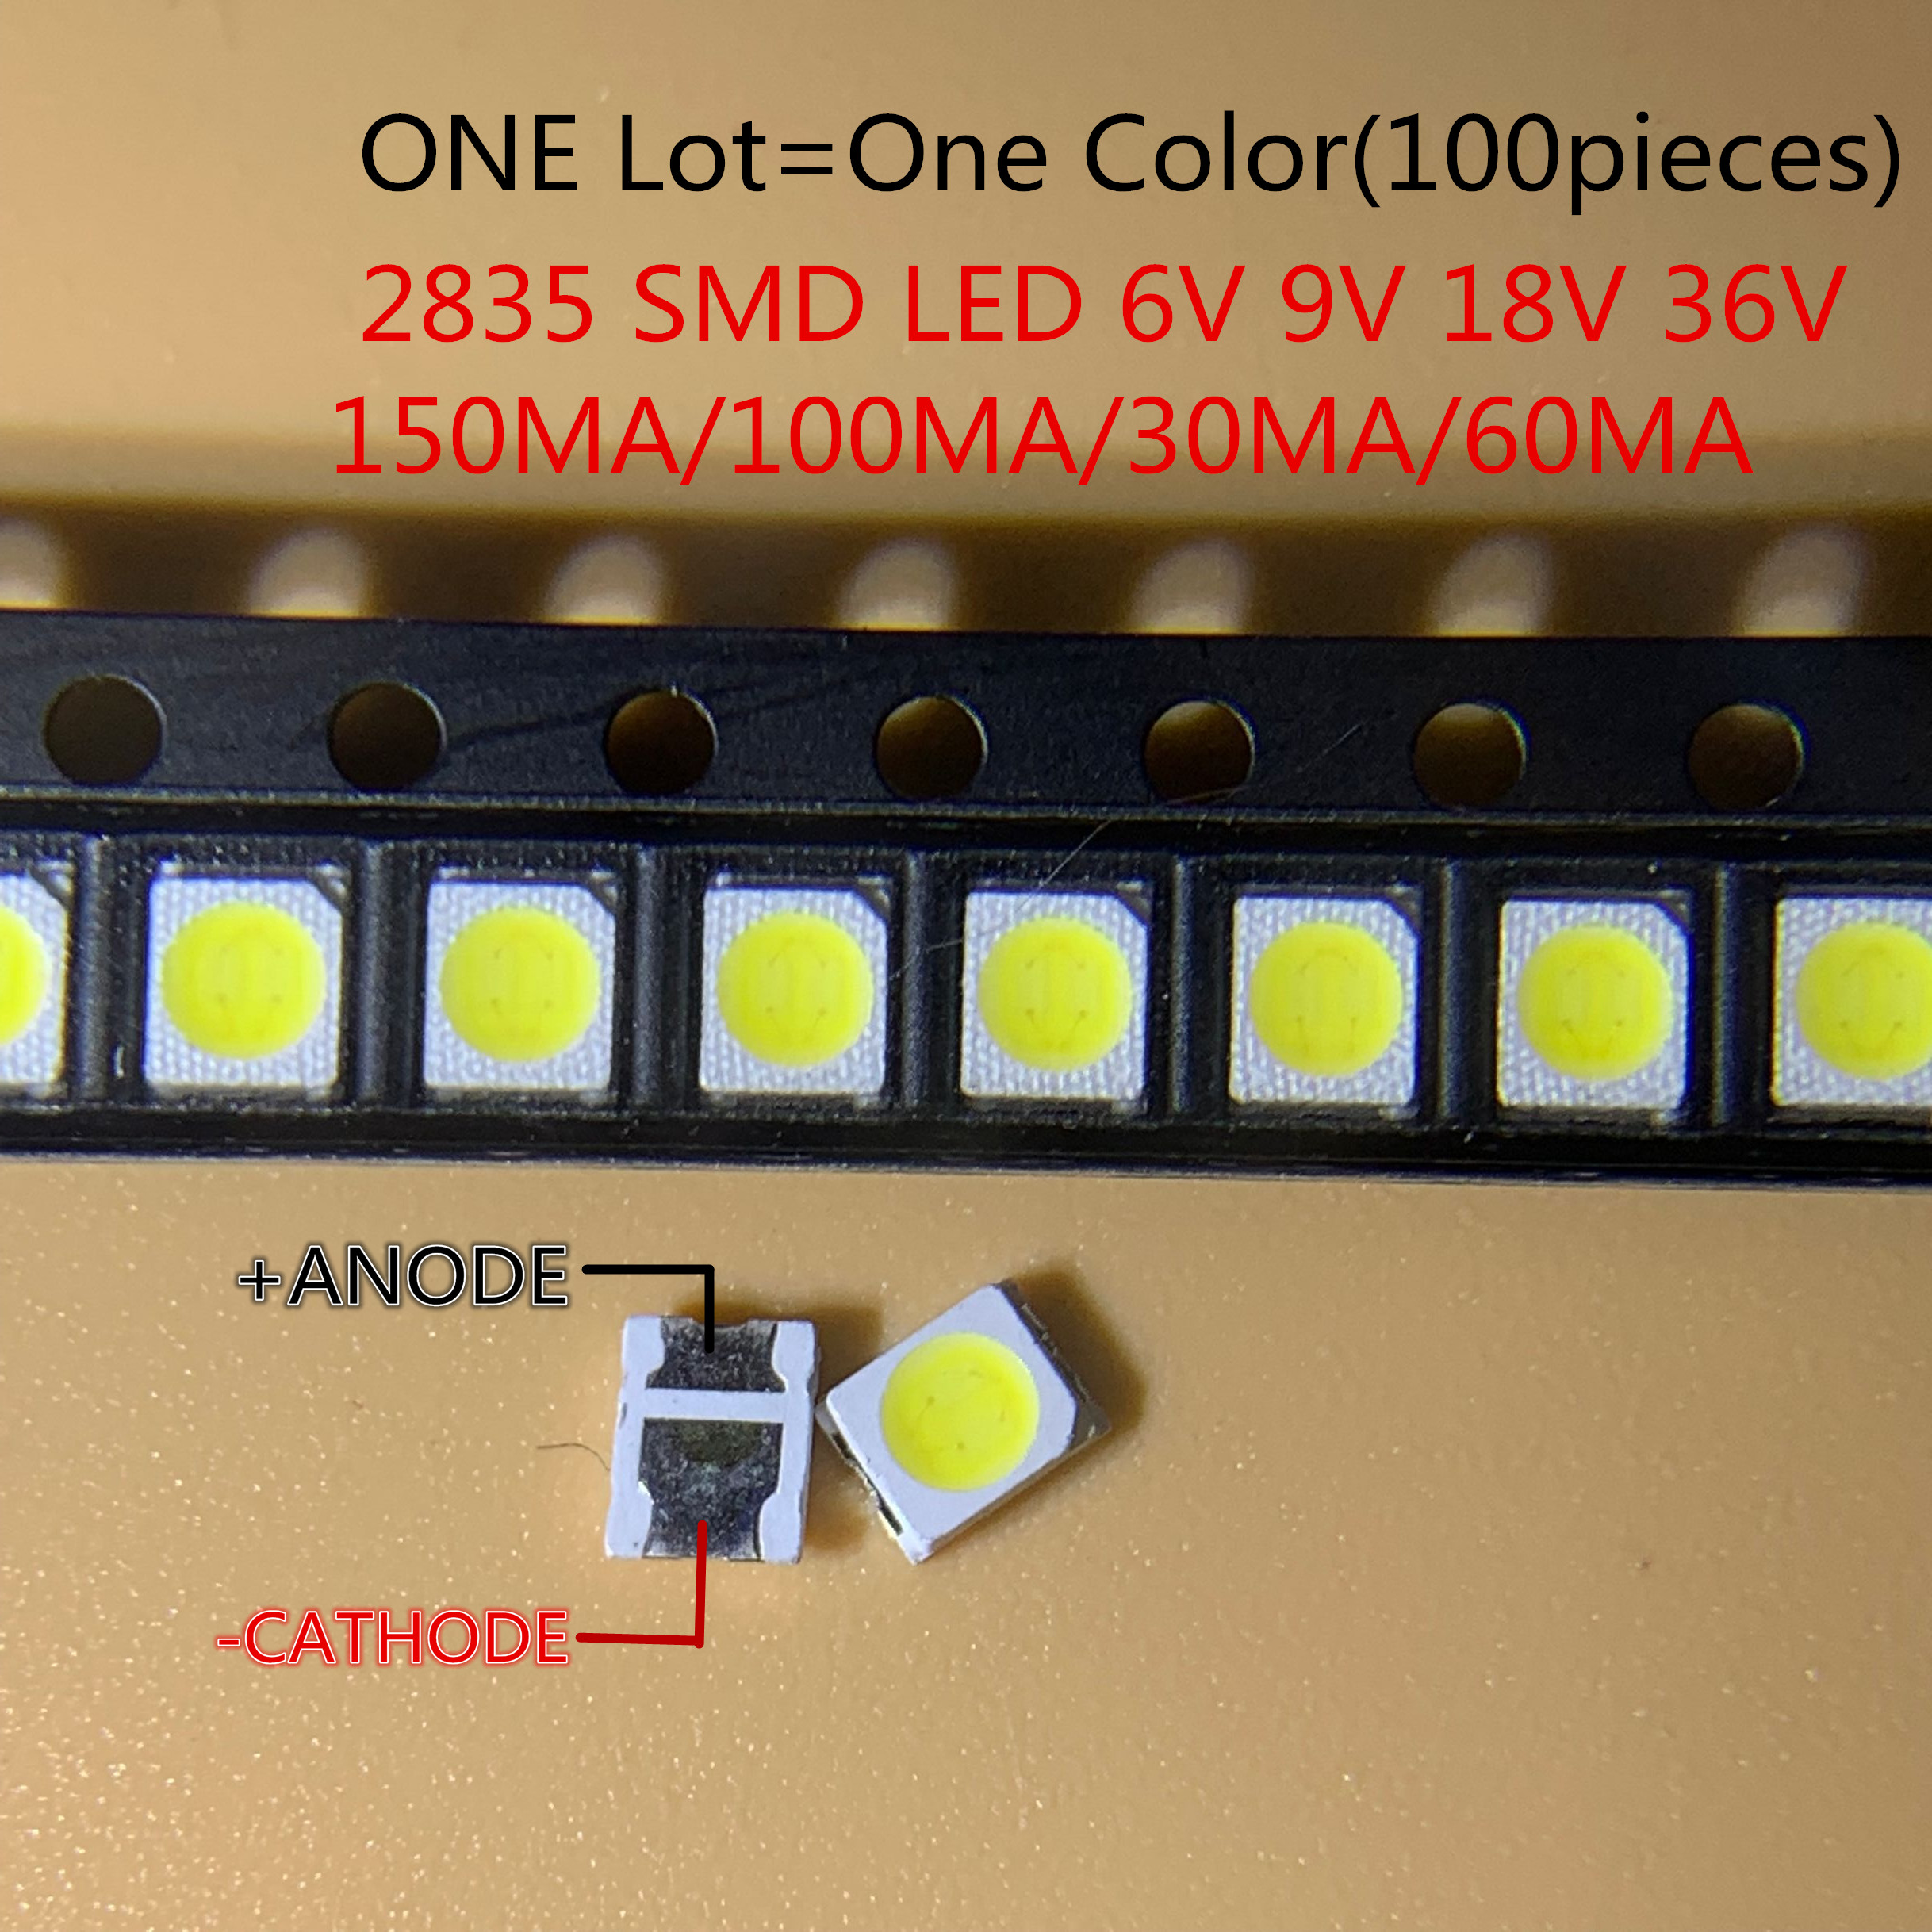 High Brightness SMD LED 2835 1W White 100PCS/Lot 3v 6V 9V 18V 36V 150MA/100MA/30MA/60MA/350ma